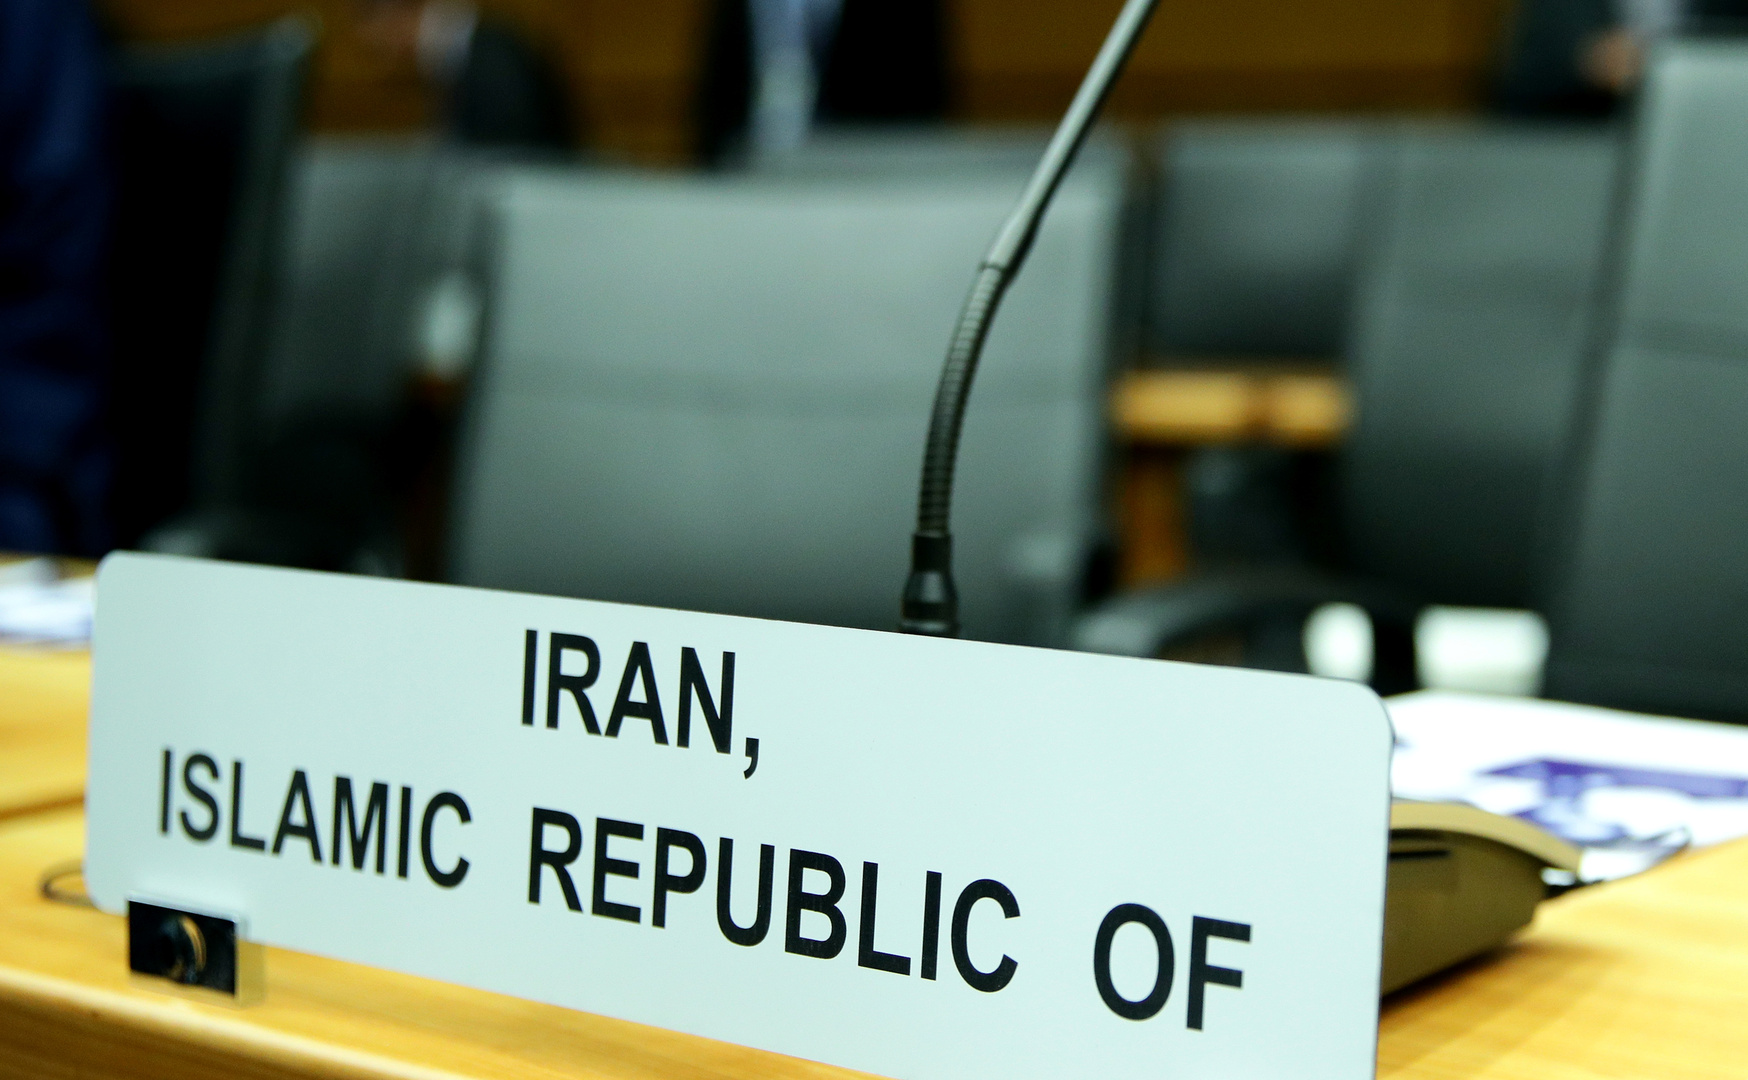 السعودية توجه دعوة إلى الوكالة الدولية للطاقة الذرية بشأن إيران